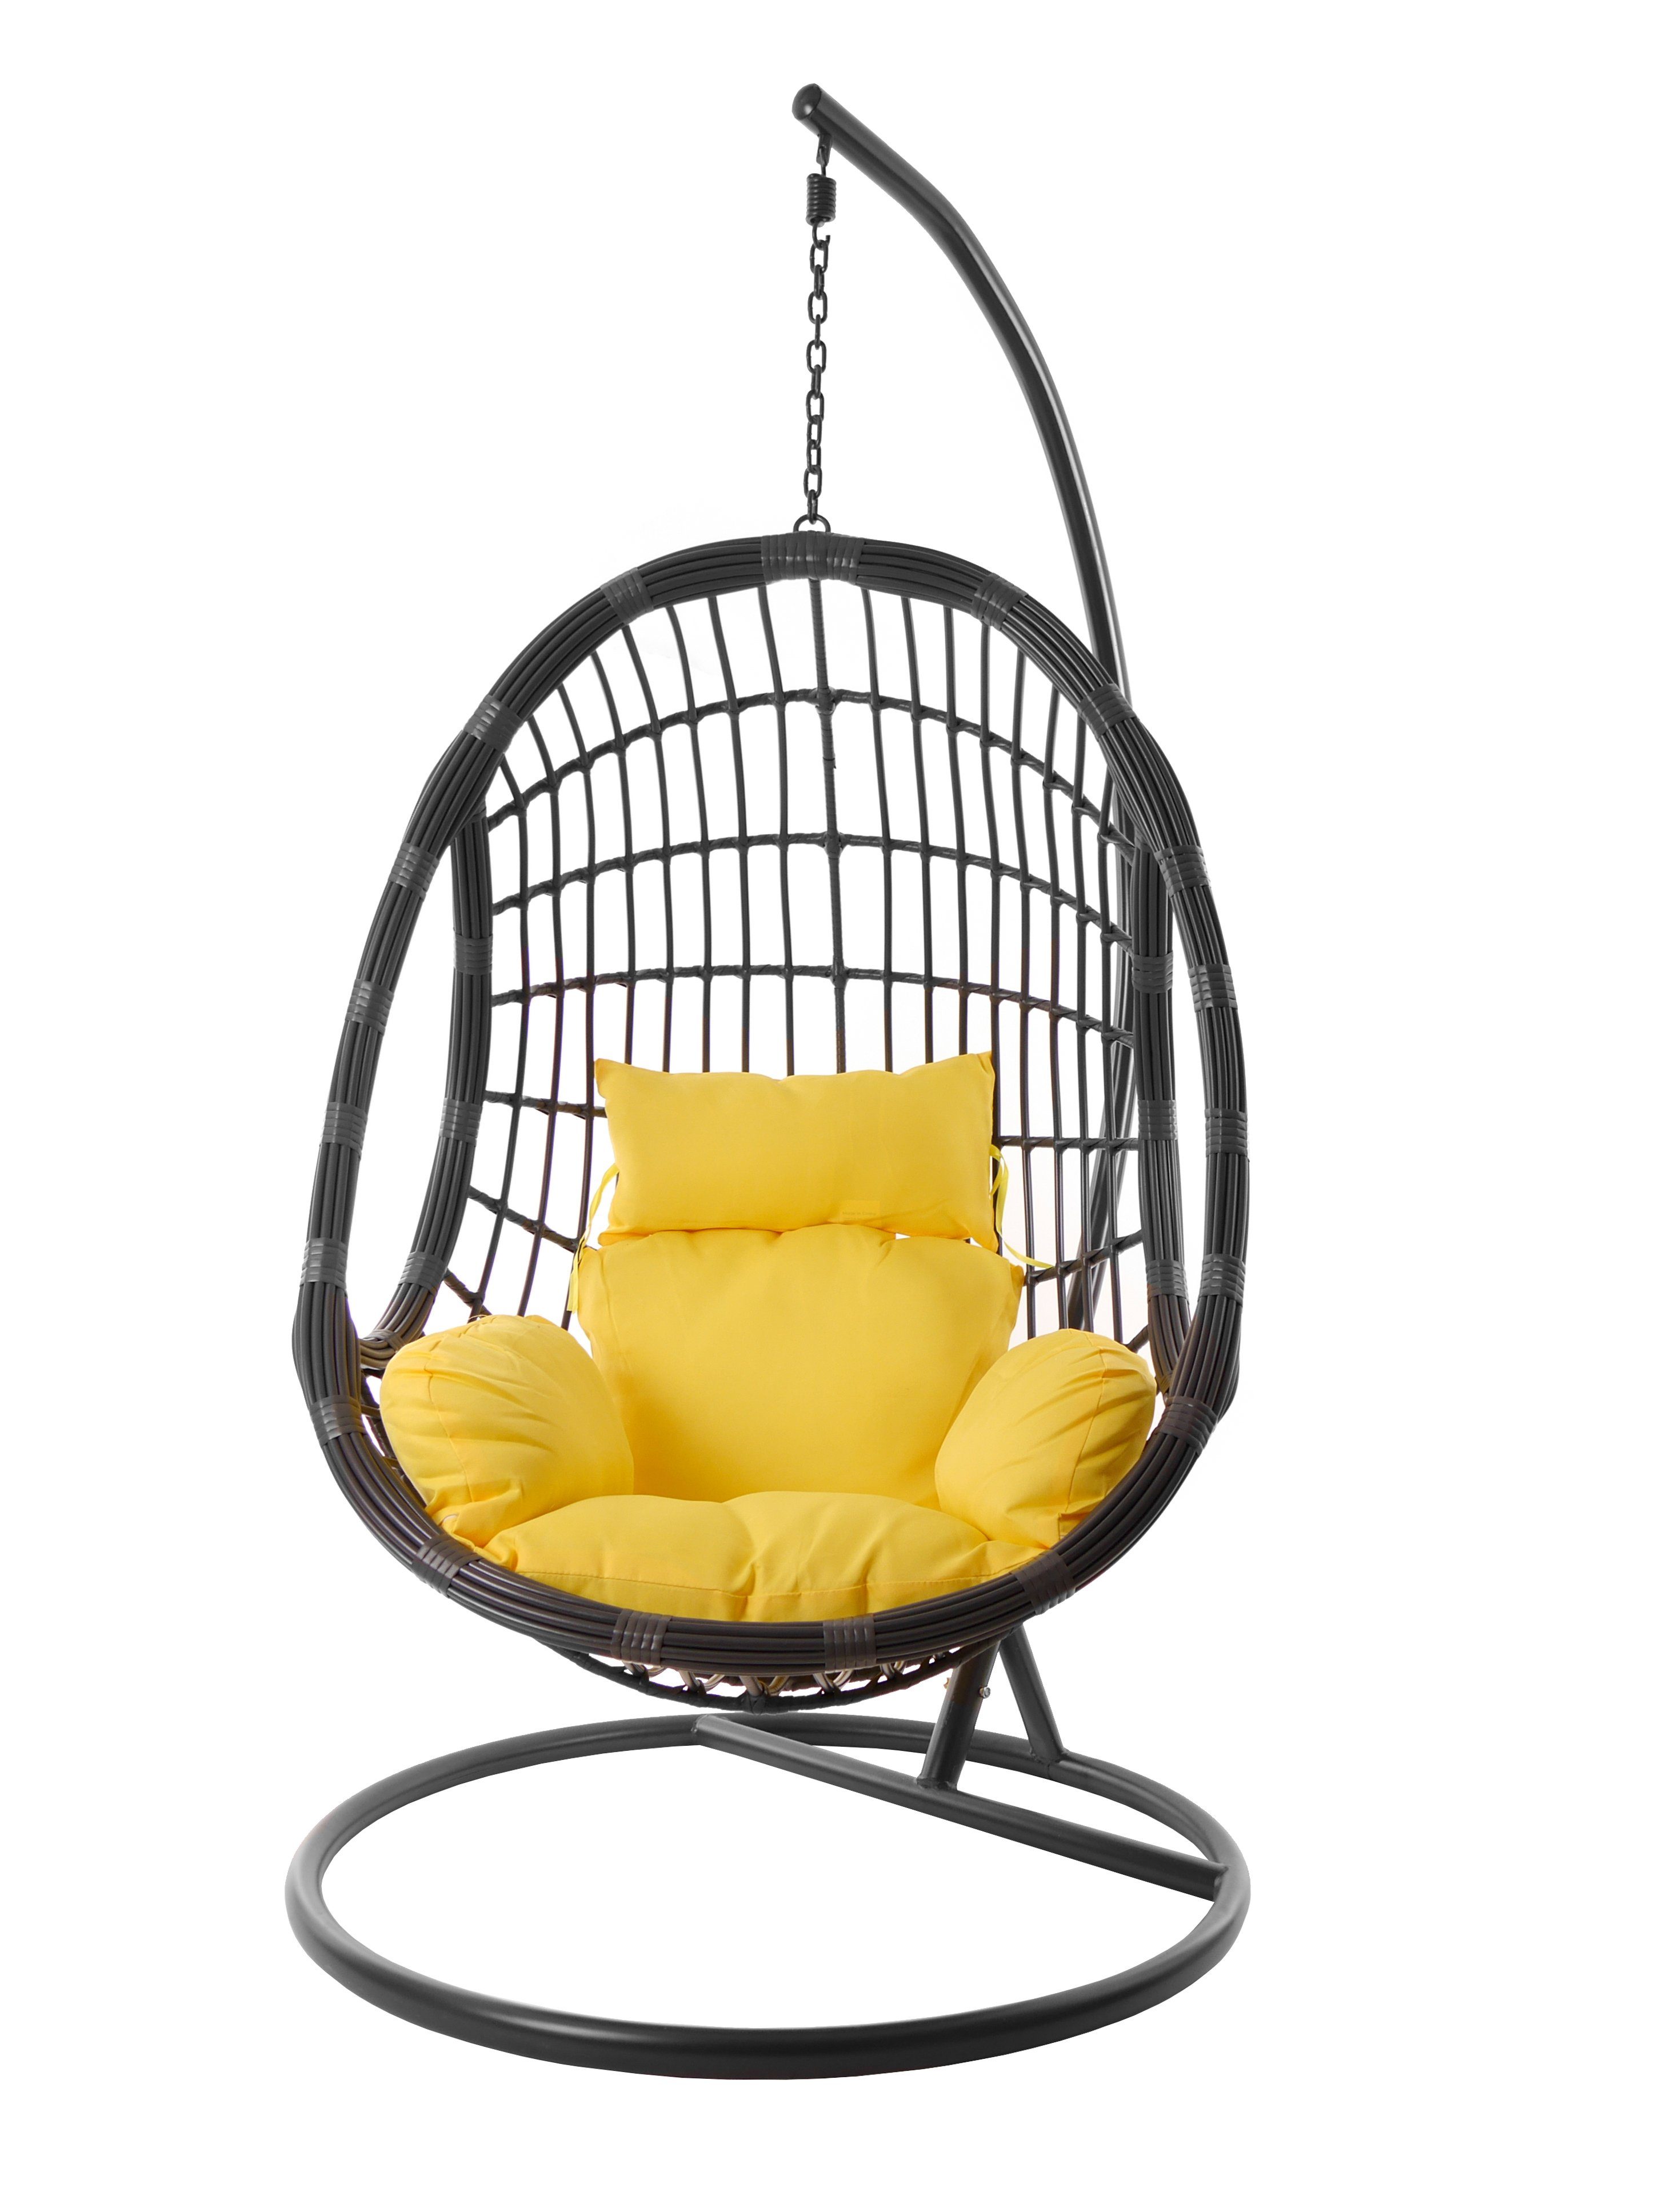 PALMANOVA moderne grau, Hängestuhl Kissen, pineapple) in Loungemöbel mit grau, Hängesessel (2200 KIDEO Hängesessel und Gestell gelb farbige Nest-Kissen